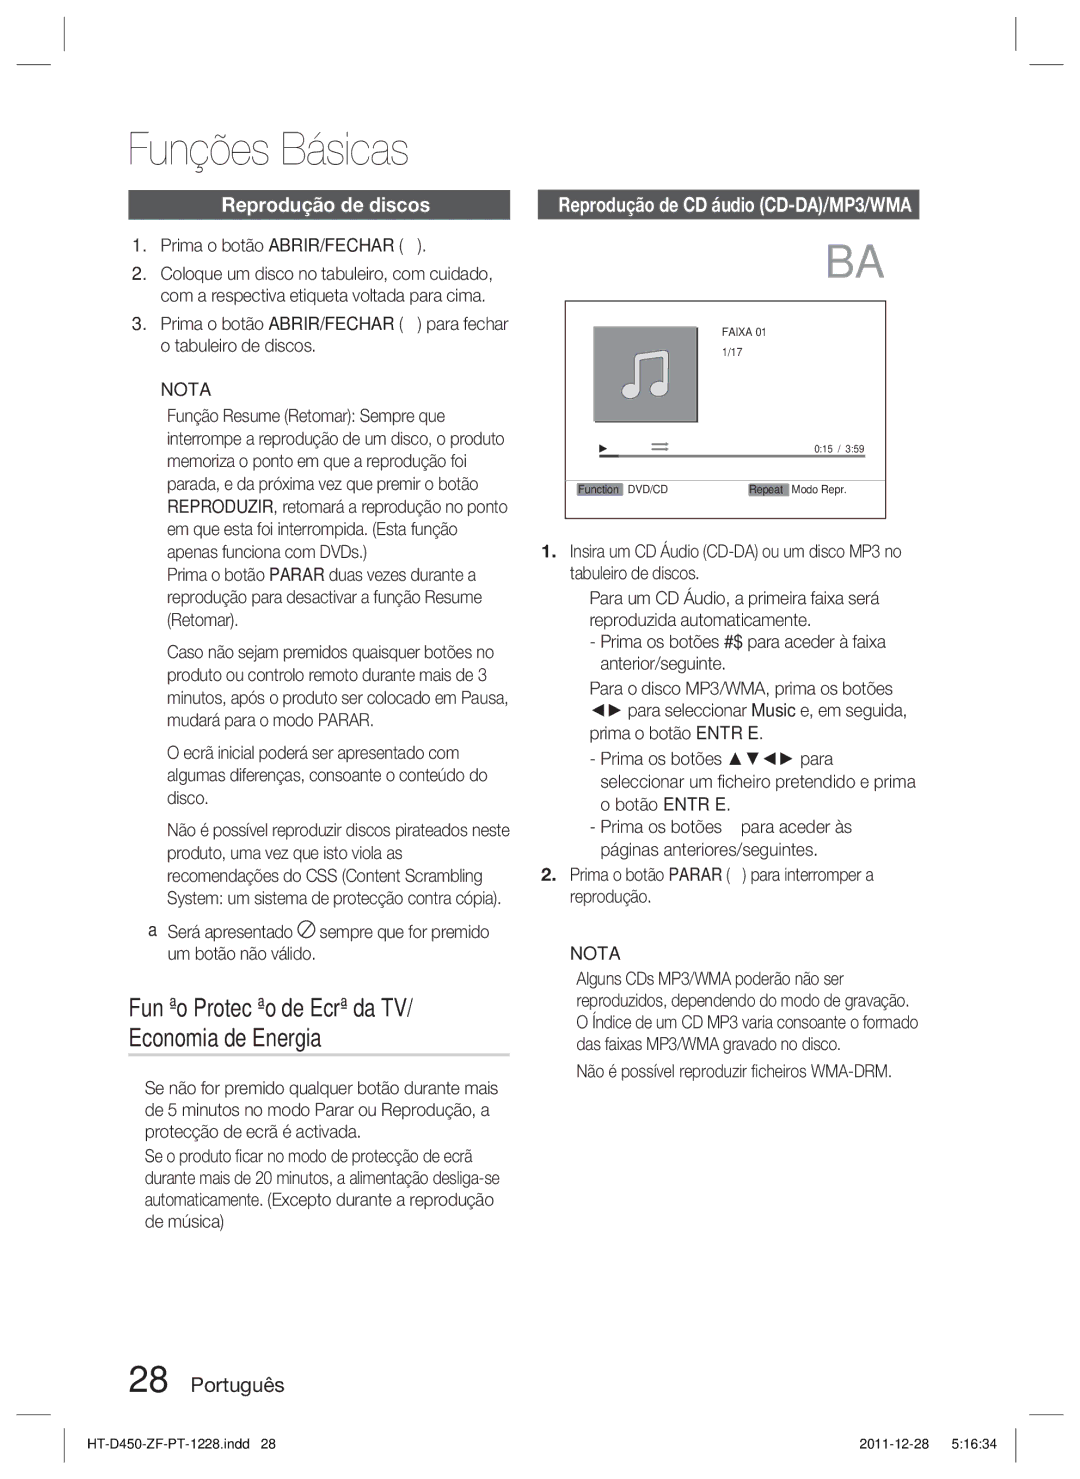 Samsung HT-D455/ZF manual Funções Básicas, Função Protecção de Ecrã da TV/ Economia de Energia, Reprodução de discos 